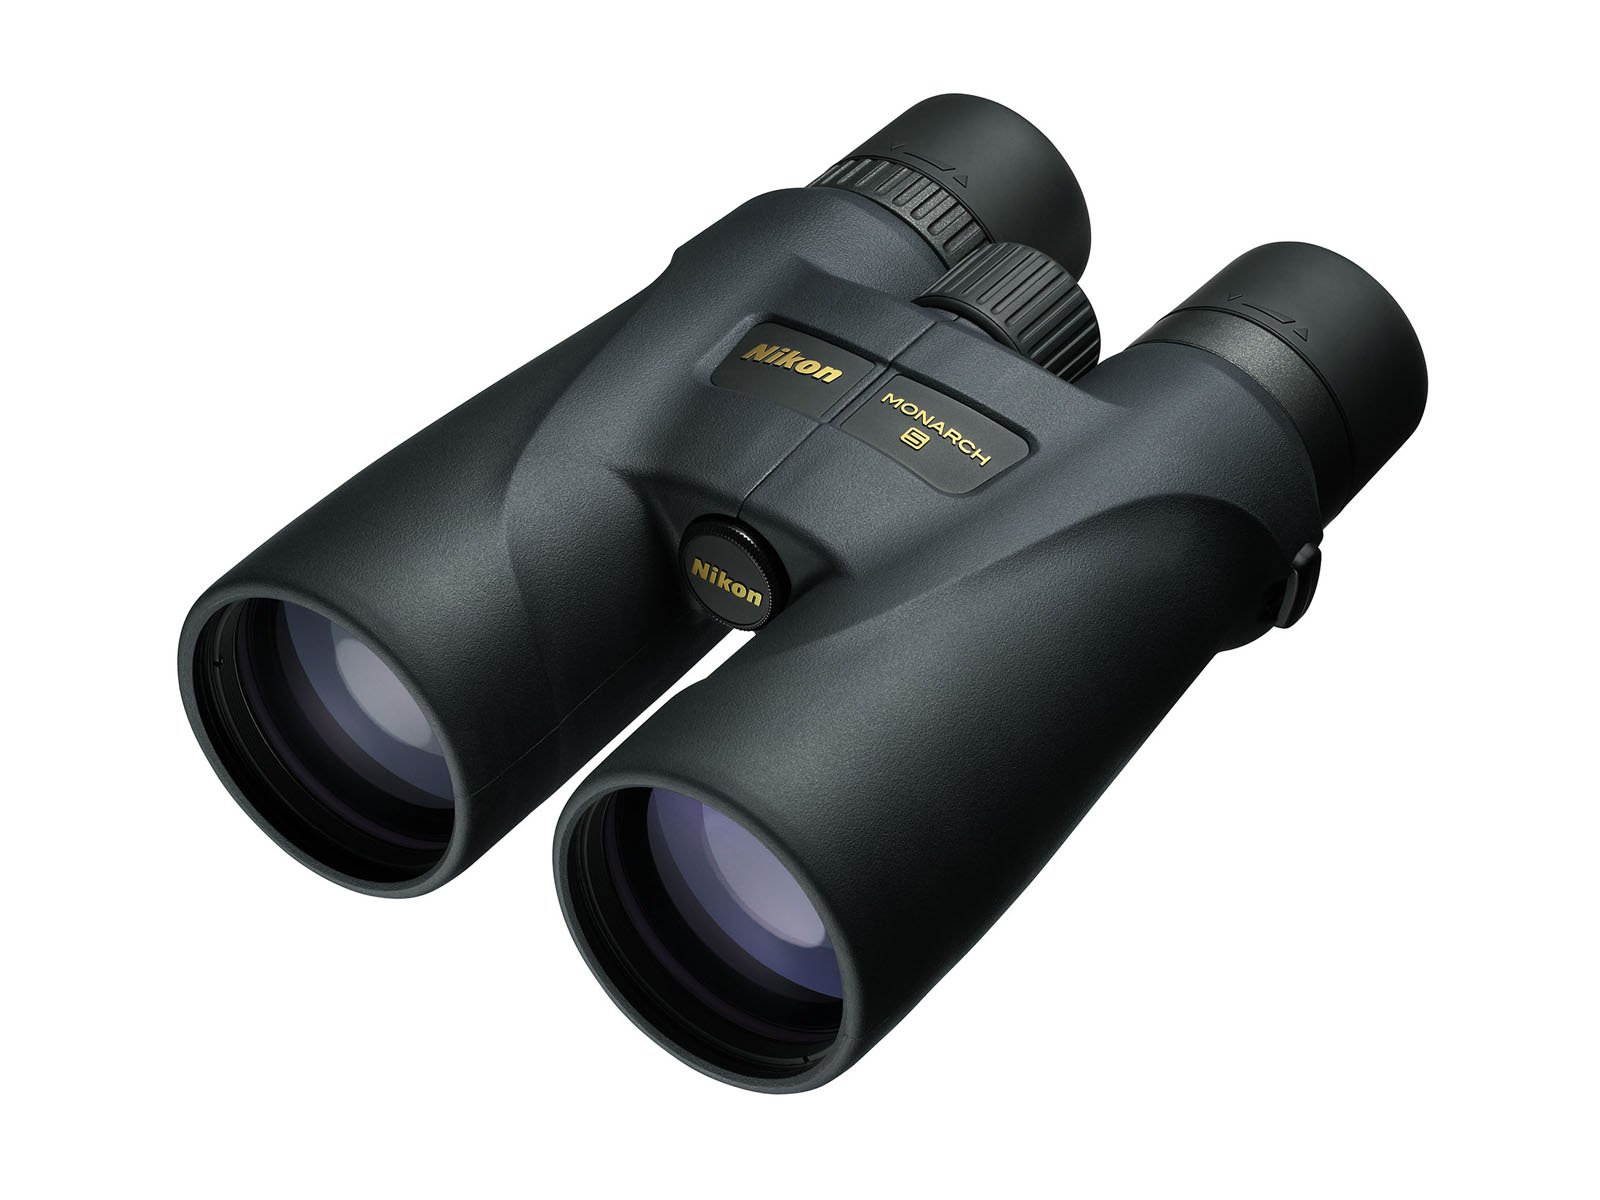 Nikon MONARCH 5 8x56 Binoculars